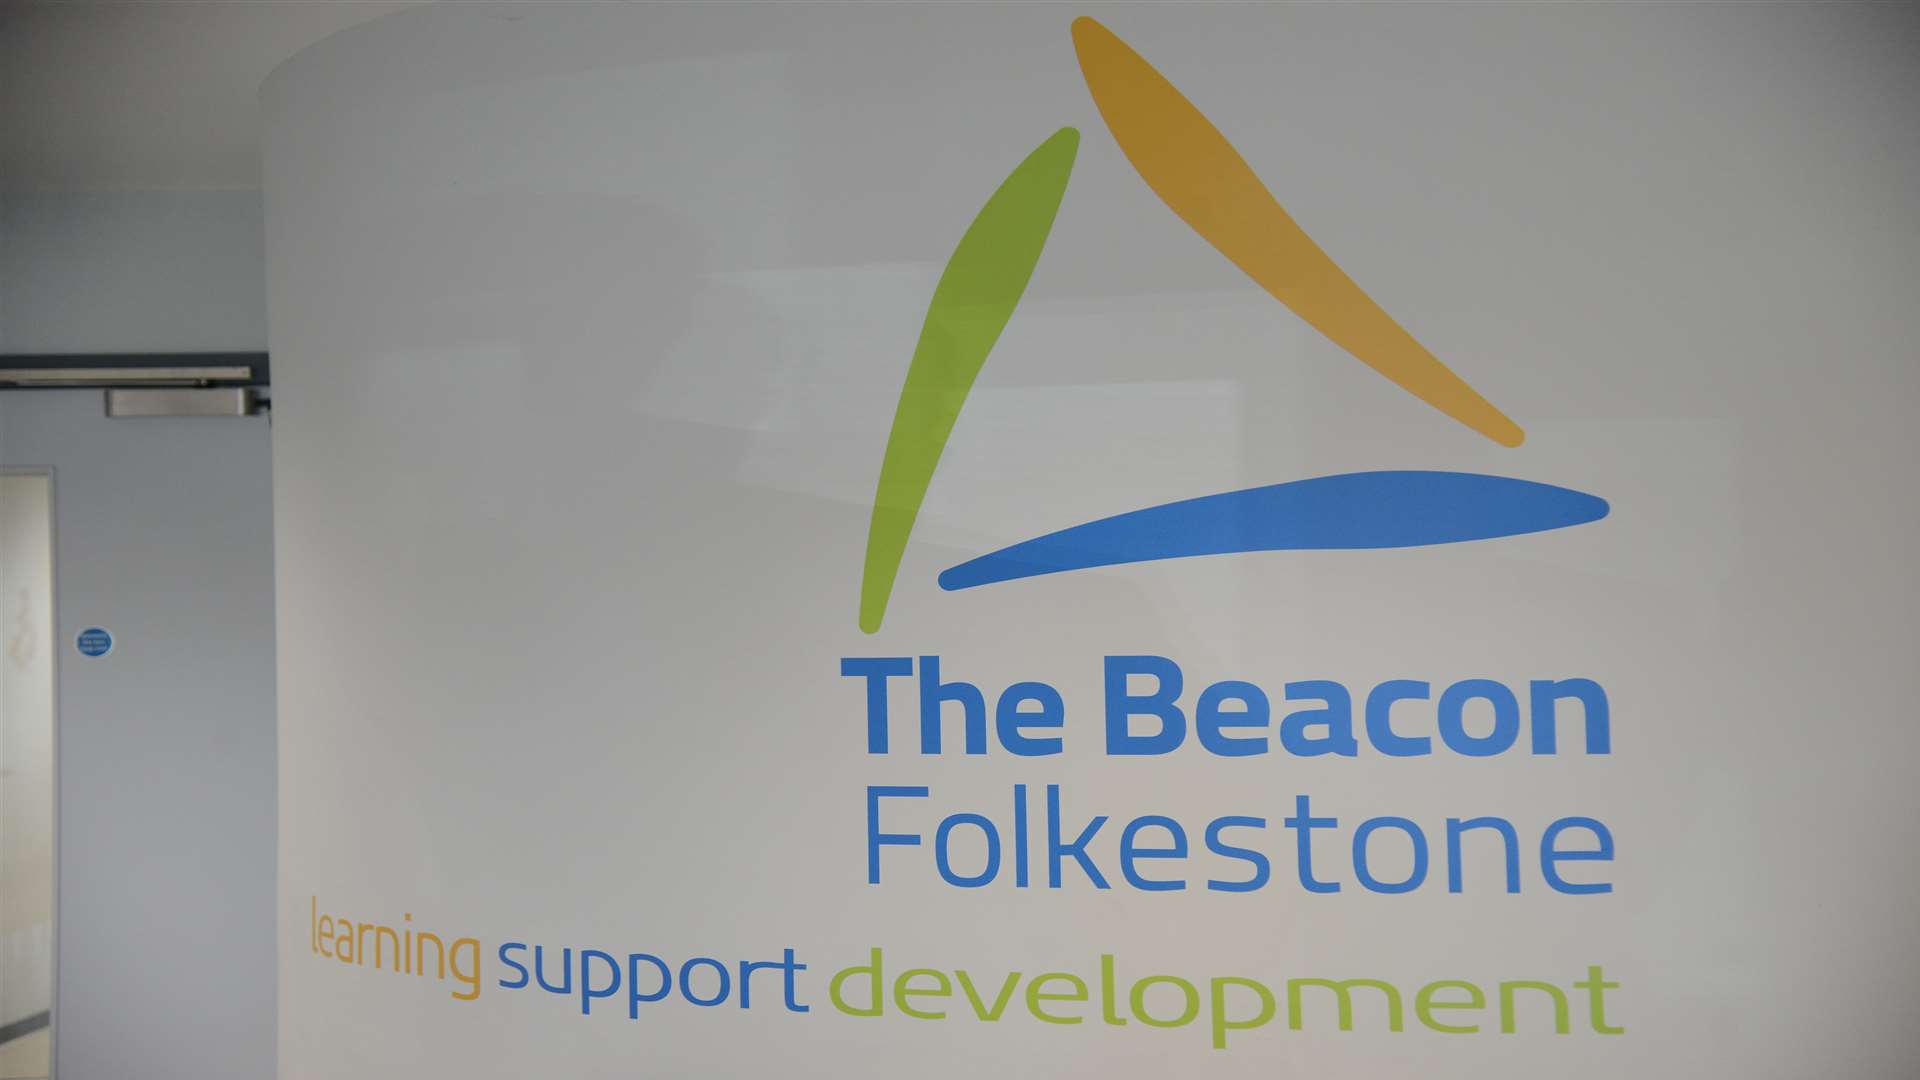 The Beacon school in Folkestone